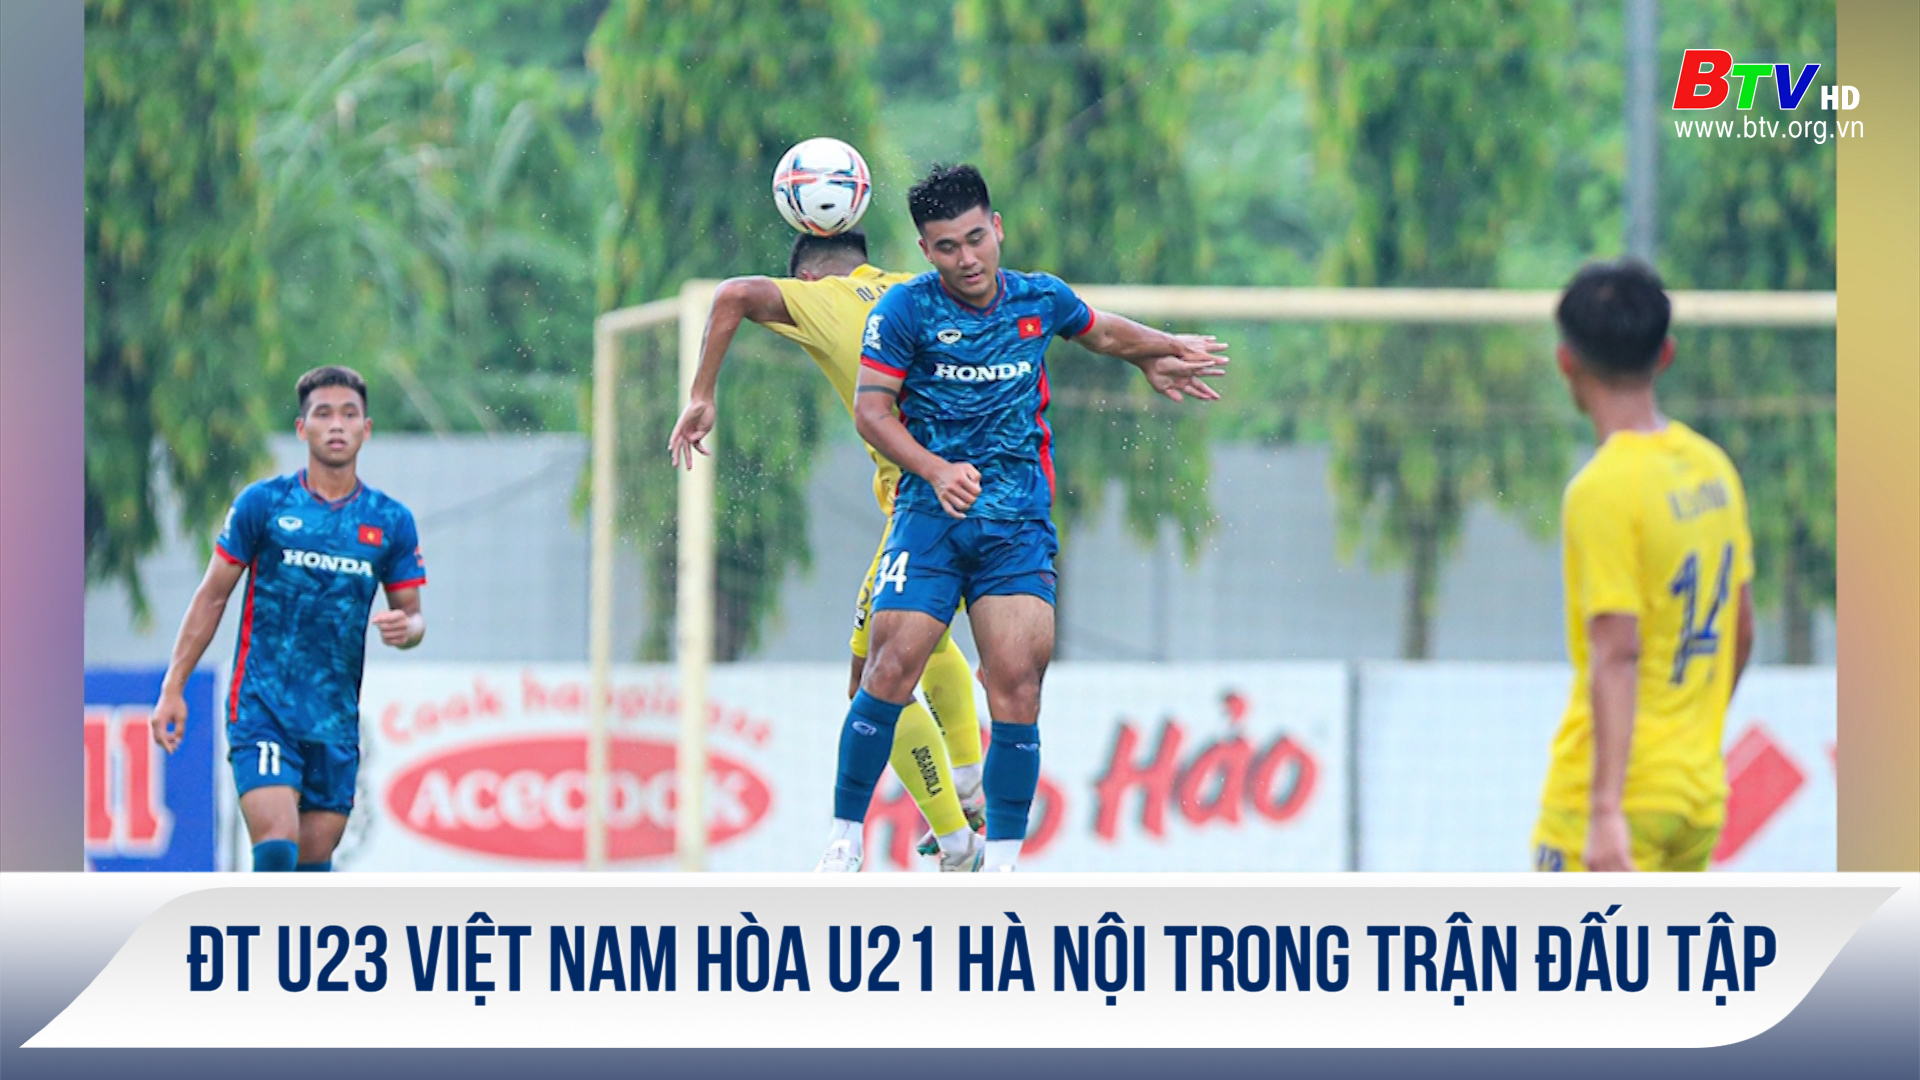 ĐT U23 Việt Nam hòa U21 Hà Nội trong trận đấu tập